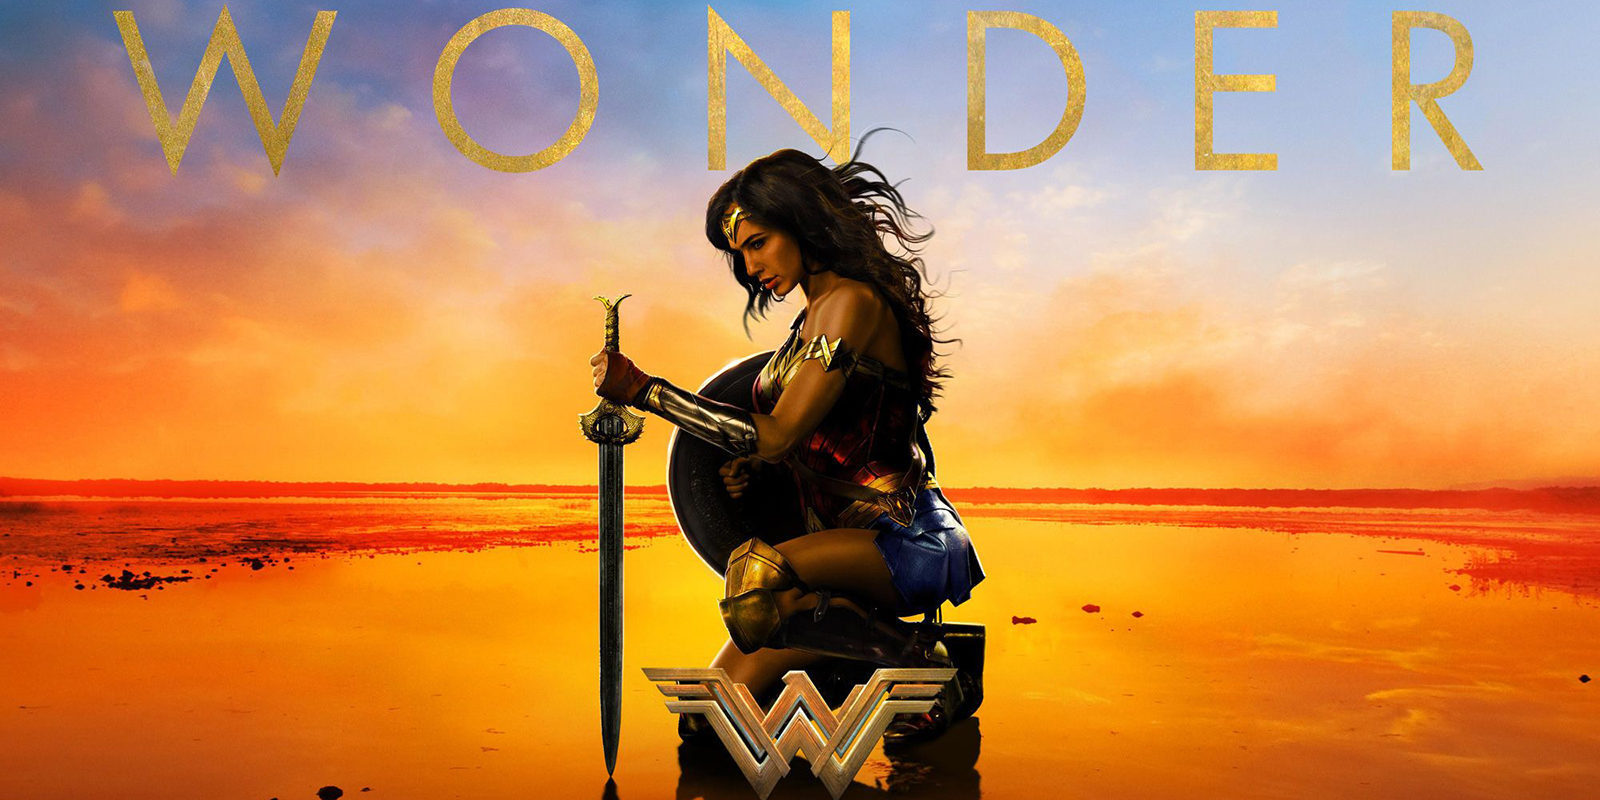 Wonder Woman no debería ser noticia por pasar el test de Bechdel, pero lo es